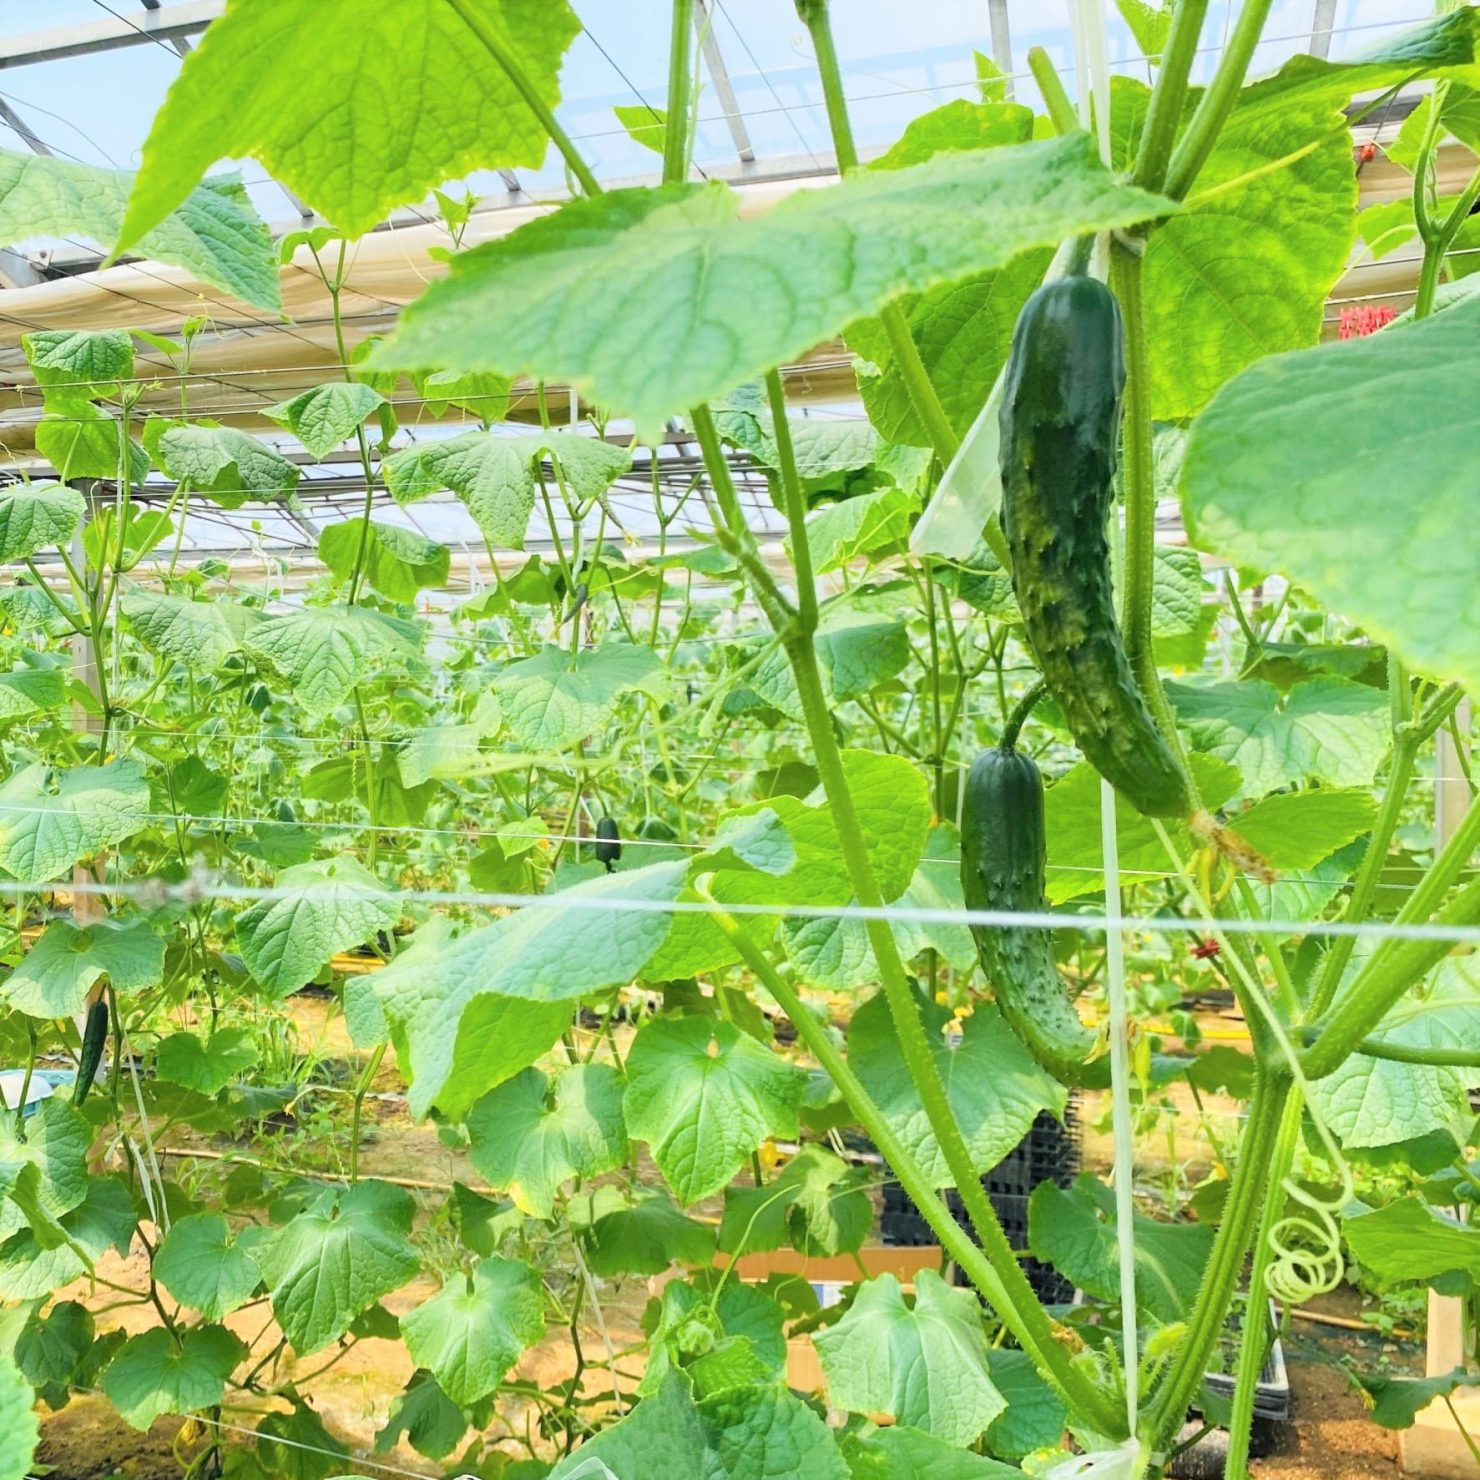 神奈川県のキュウリ栽培におけるモスバリアジュニアⅡレッド設置時期の検討